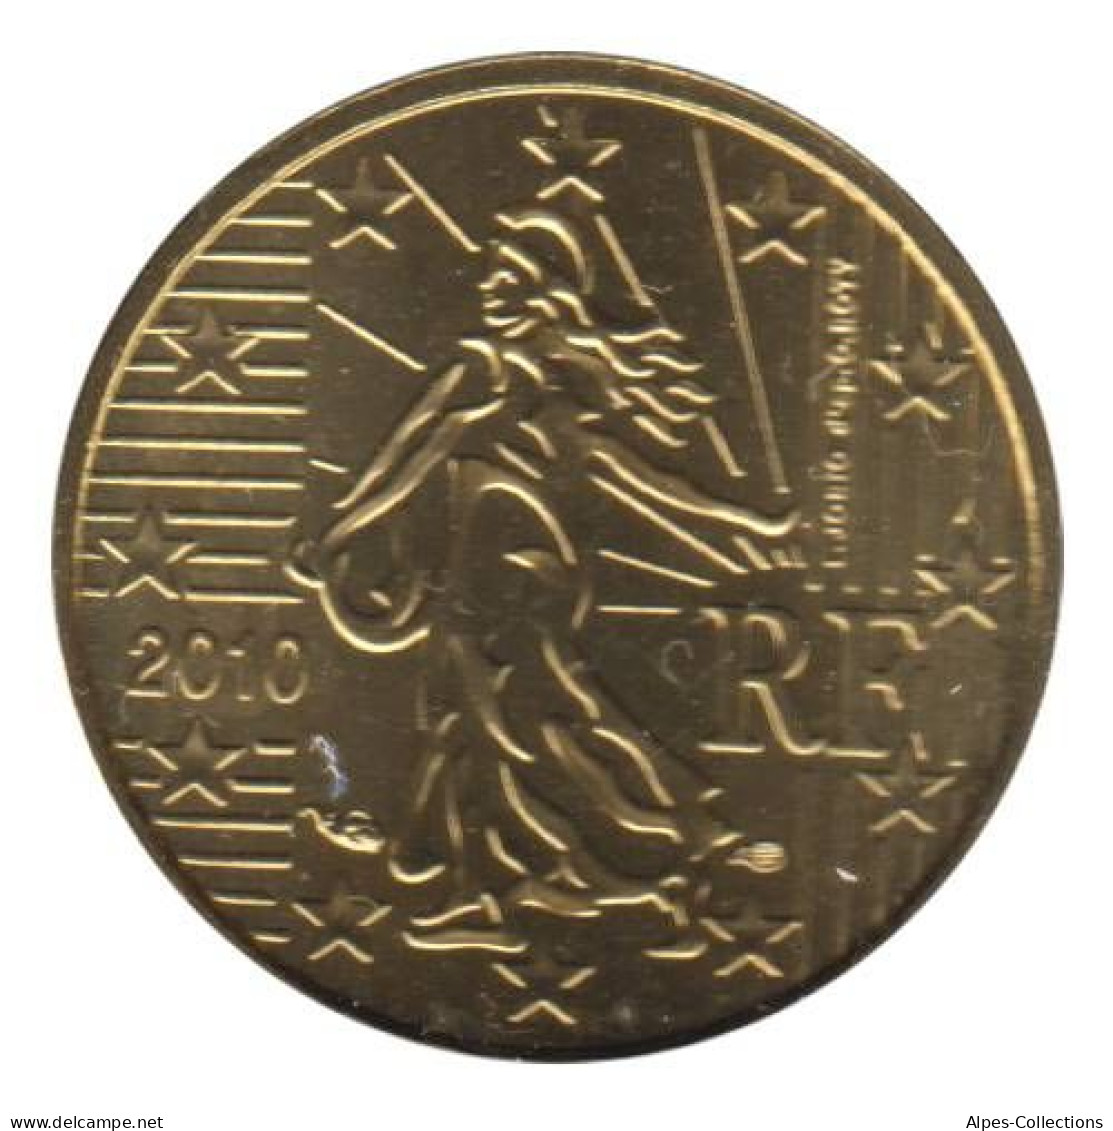 FR01010.2 - FRANCE - 10 Cents - 2010 - BU - Frankreich